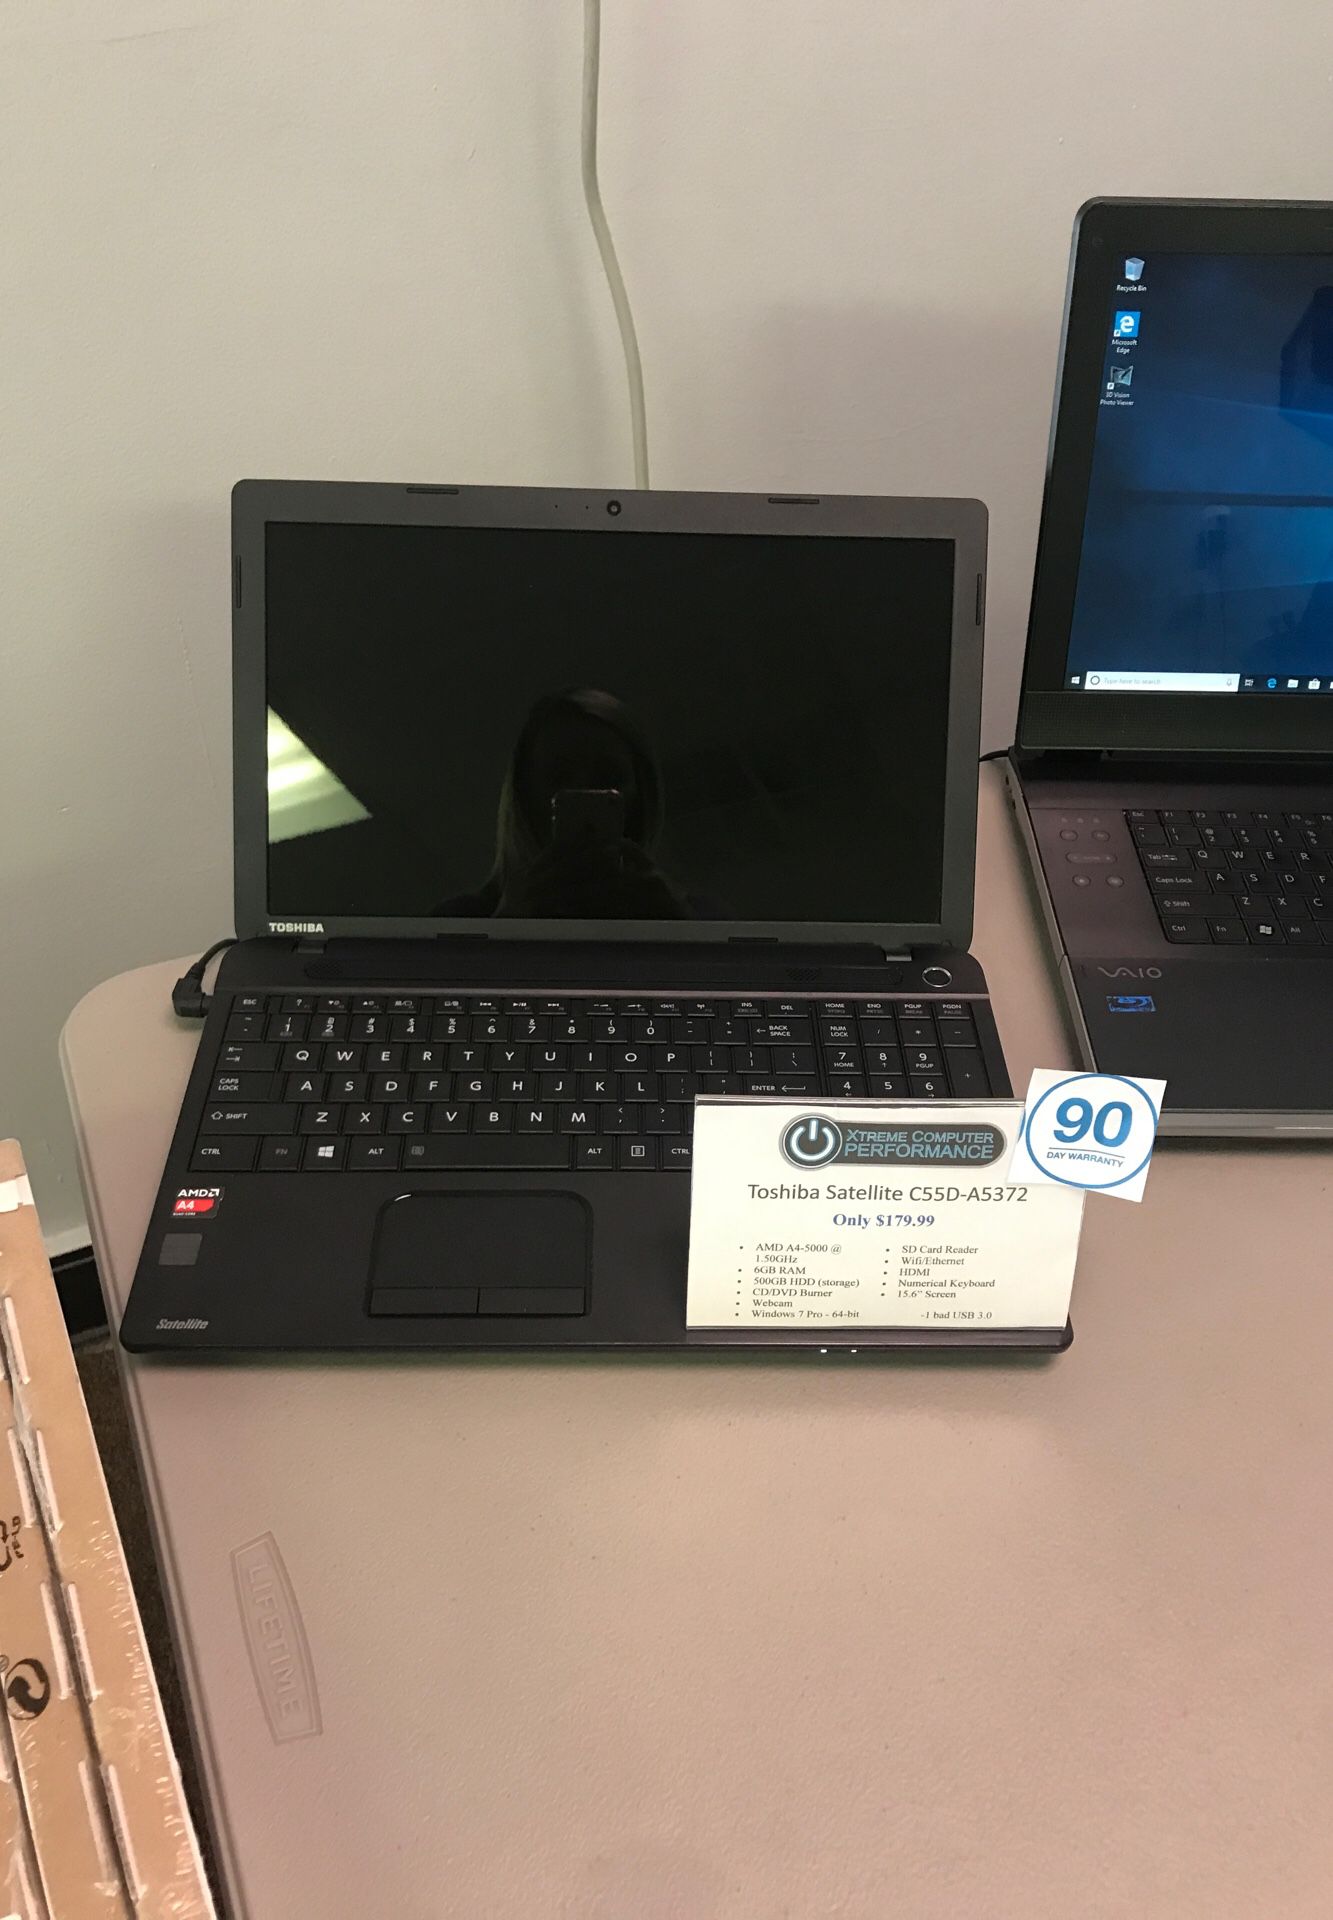 Toshiba laptop with warranty